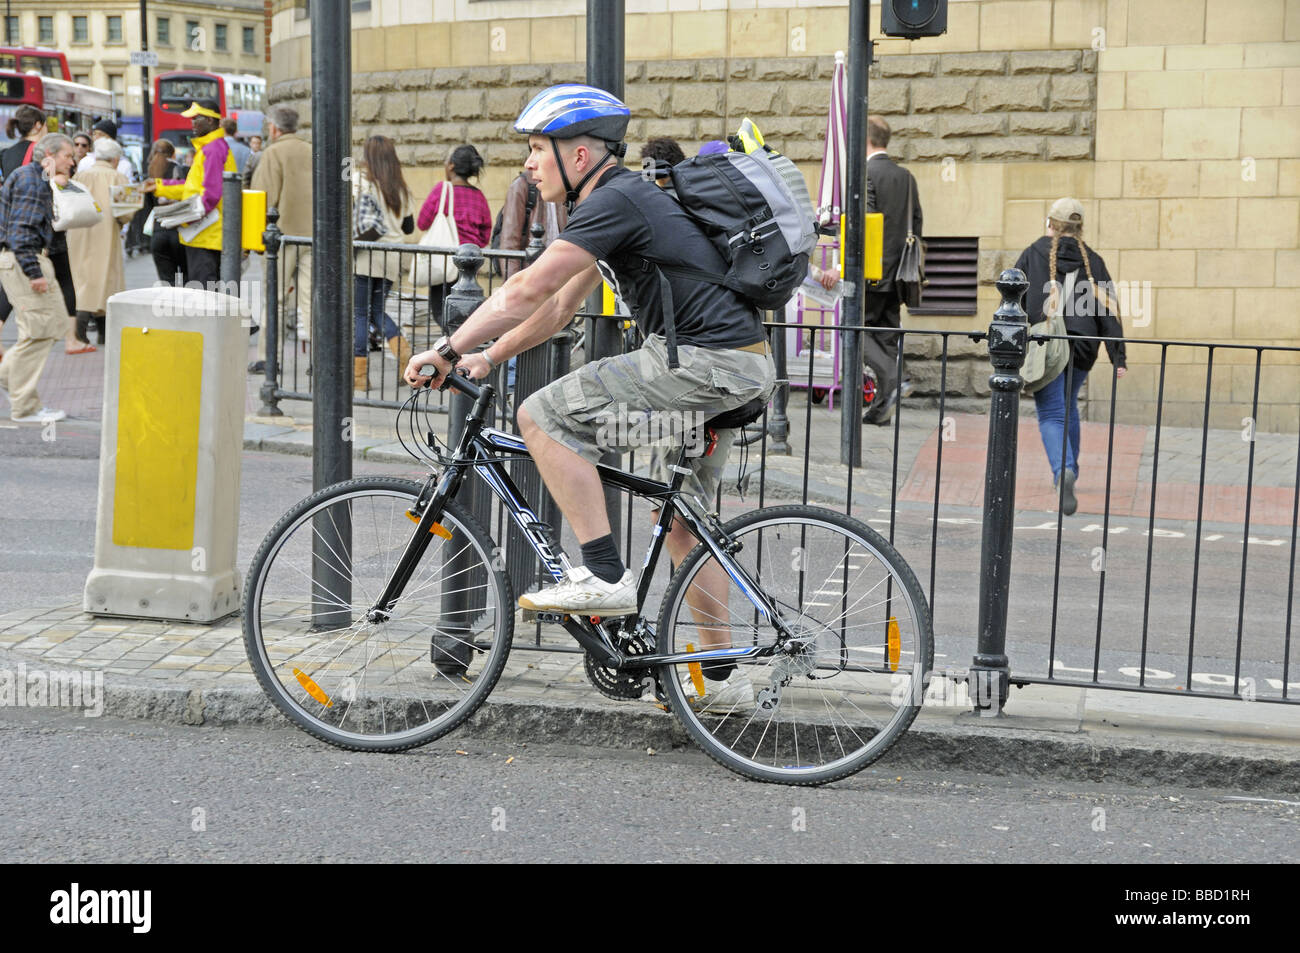 Tenue cycliste jusqu'aux feux de circulation Angel Islington Londres Angleterre Royaume-uni Banque D'Images